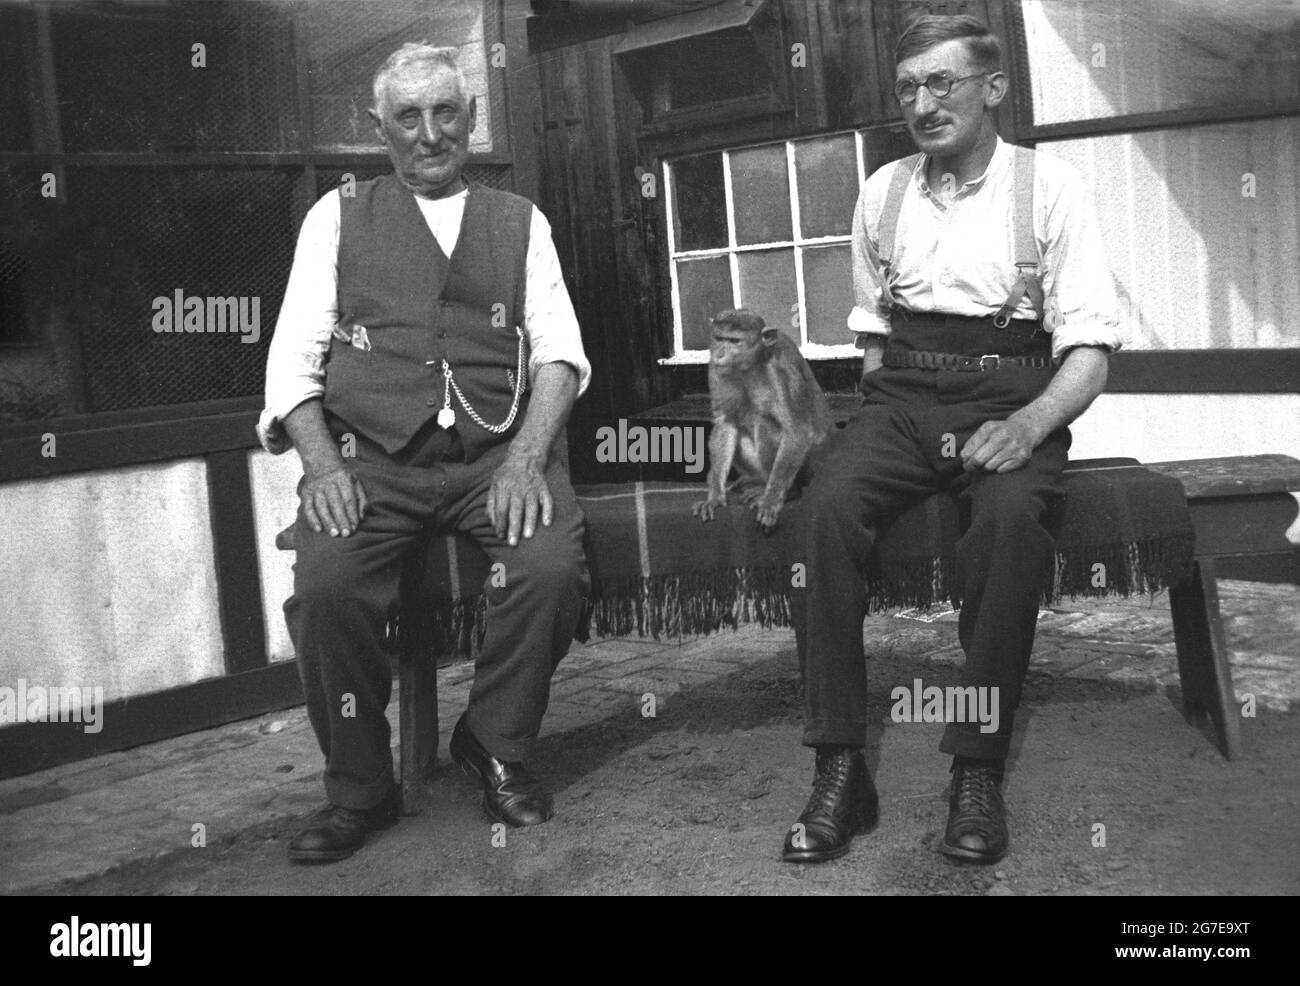 Années 1930, historique, deux ouvriers, peut-être des fermes, dans la robe  traditionnelle masculine de l'époque, l'un portant des bretelles, l'homme  plus âgé portant un gilet avec une montre de poche sur une